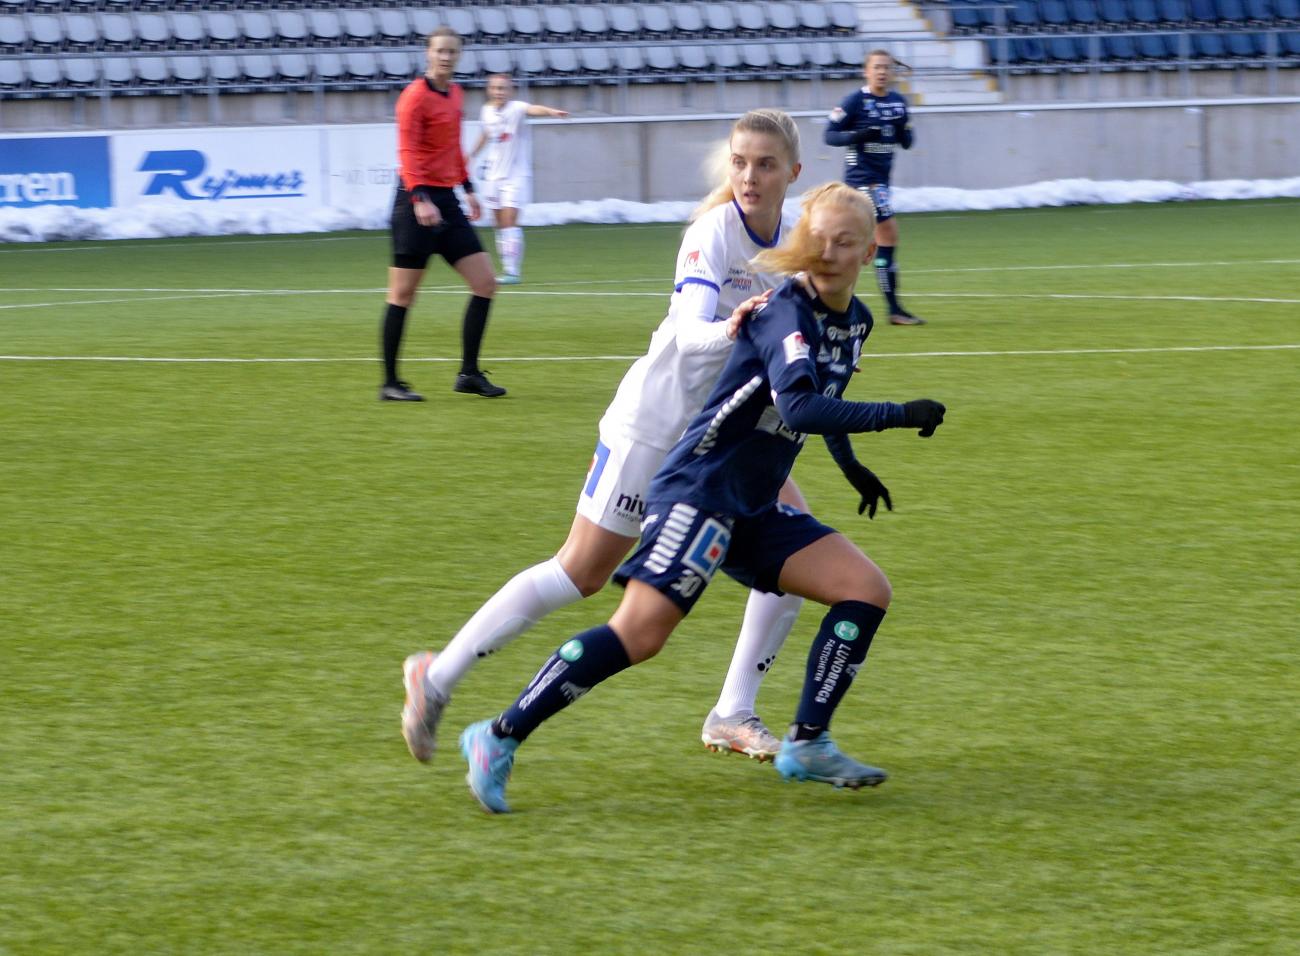 050322 , 05032022 , 20220305 , Fotboll , Olivia Mattsson (8) som nu spelar i Elitettanlaget Växjö DFF *** Local Caption *** @Bildtext:Så här långt in på försäsongen har Olivia Mattsson en given plats i Växjölagets startelva. I lördags spelade hon från start och hela matchen.@Normal:<@Foto>Foto: Victor Sundqvist